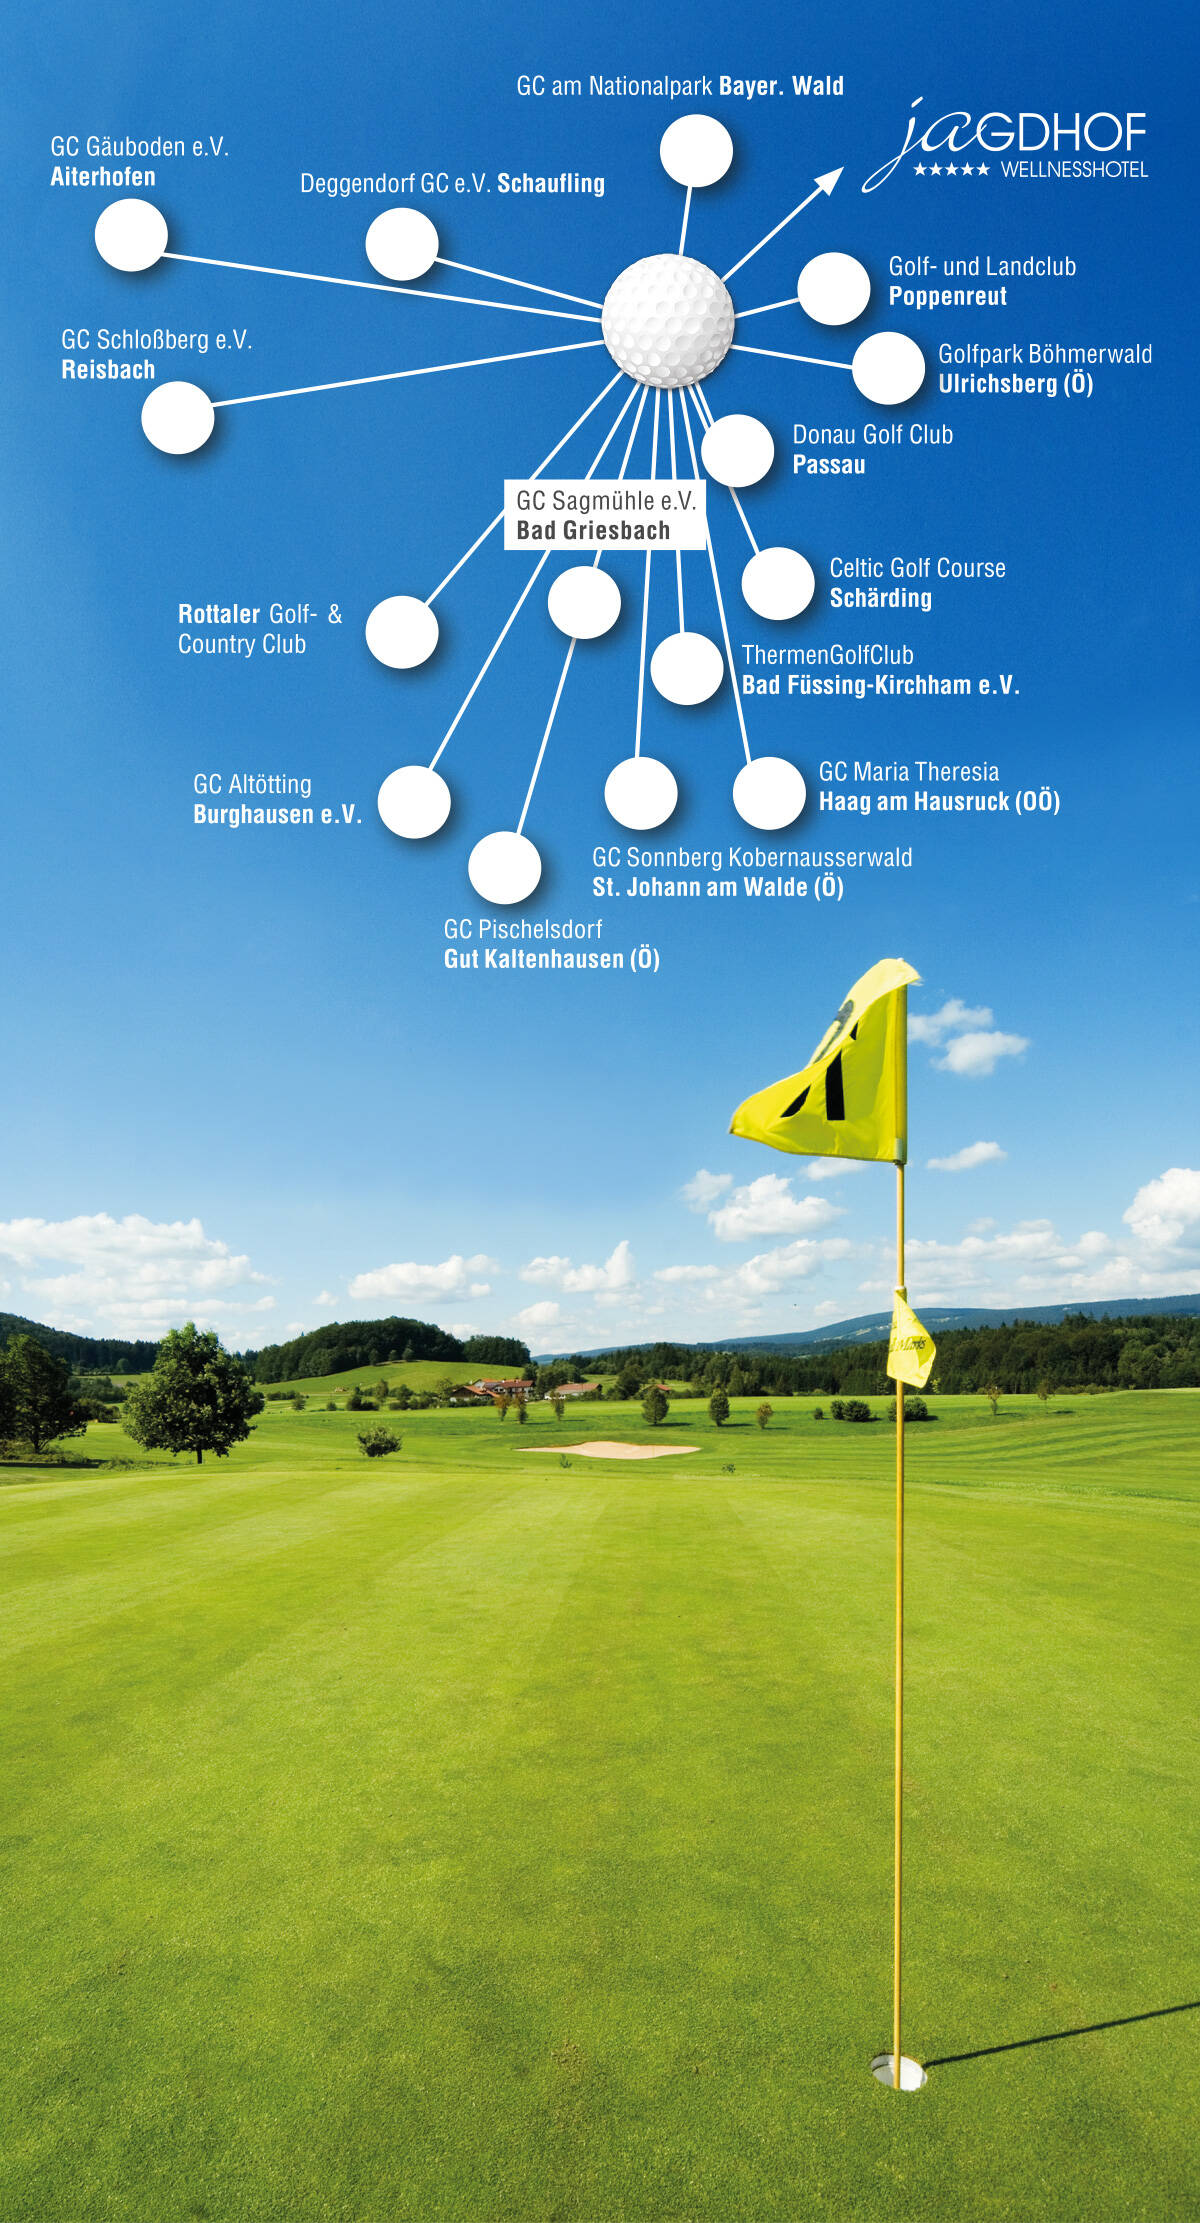 15 Golfclubs in der Nähe des 5-Sterne Hotels im Bayerischen Wald